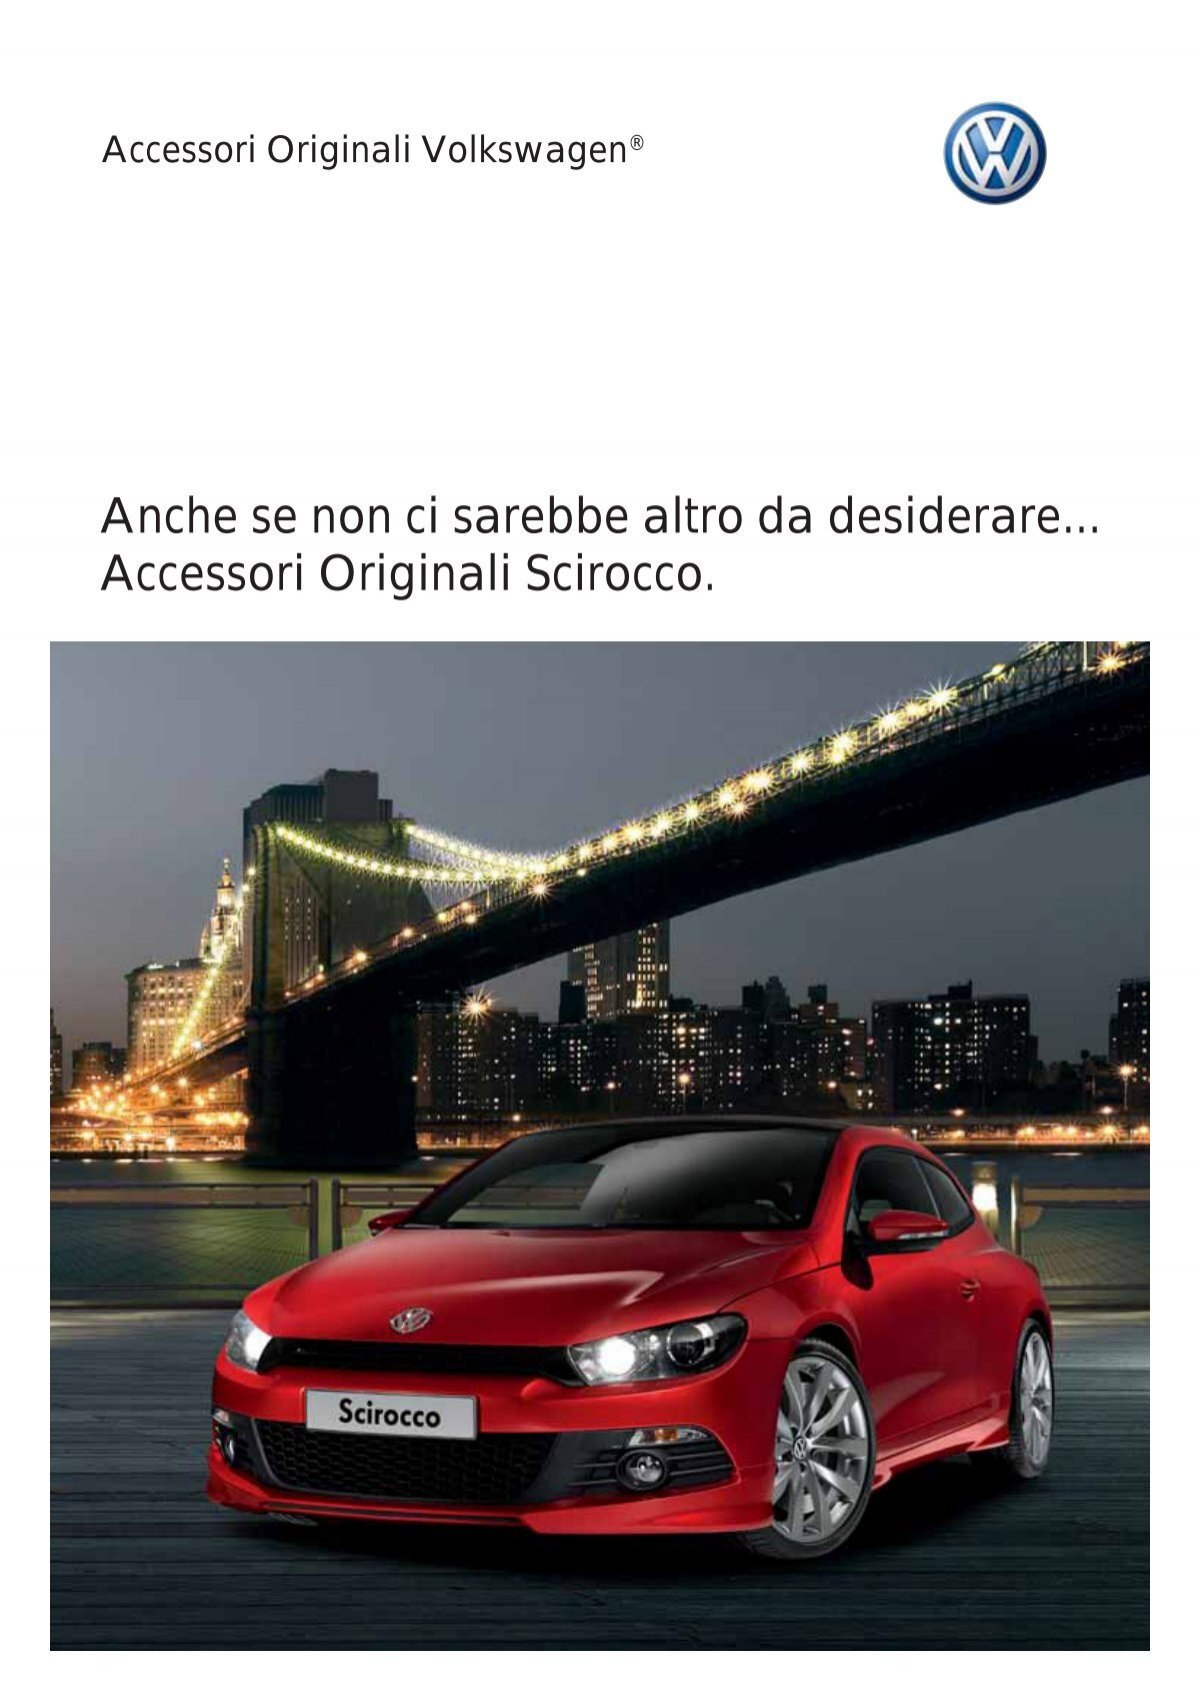 Accessori - Volkswagen Italia